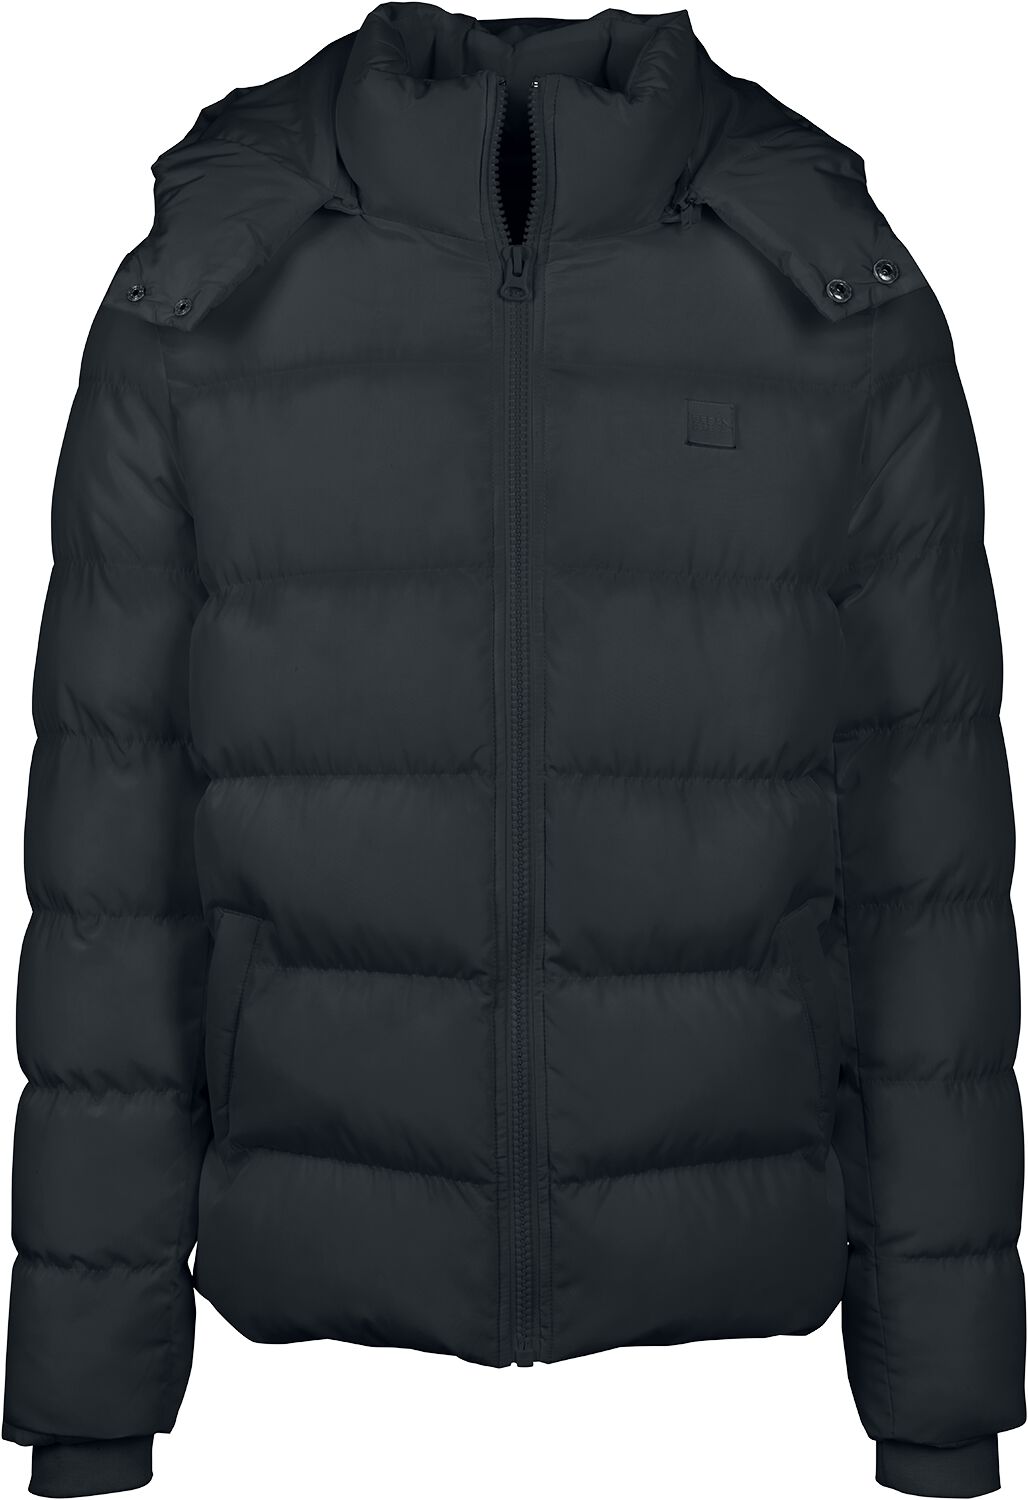 Urban Classics Übergangsjacke - Hooded Puffer Jacket - L bis 5XL - für Männer - Größe L - schwarz